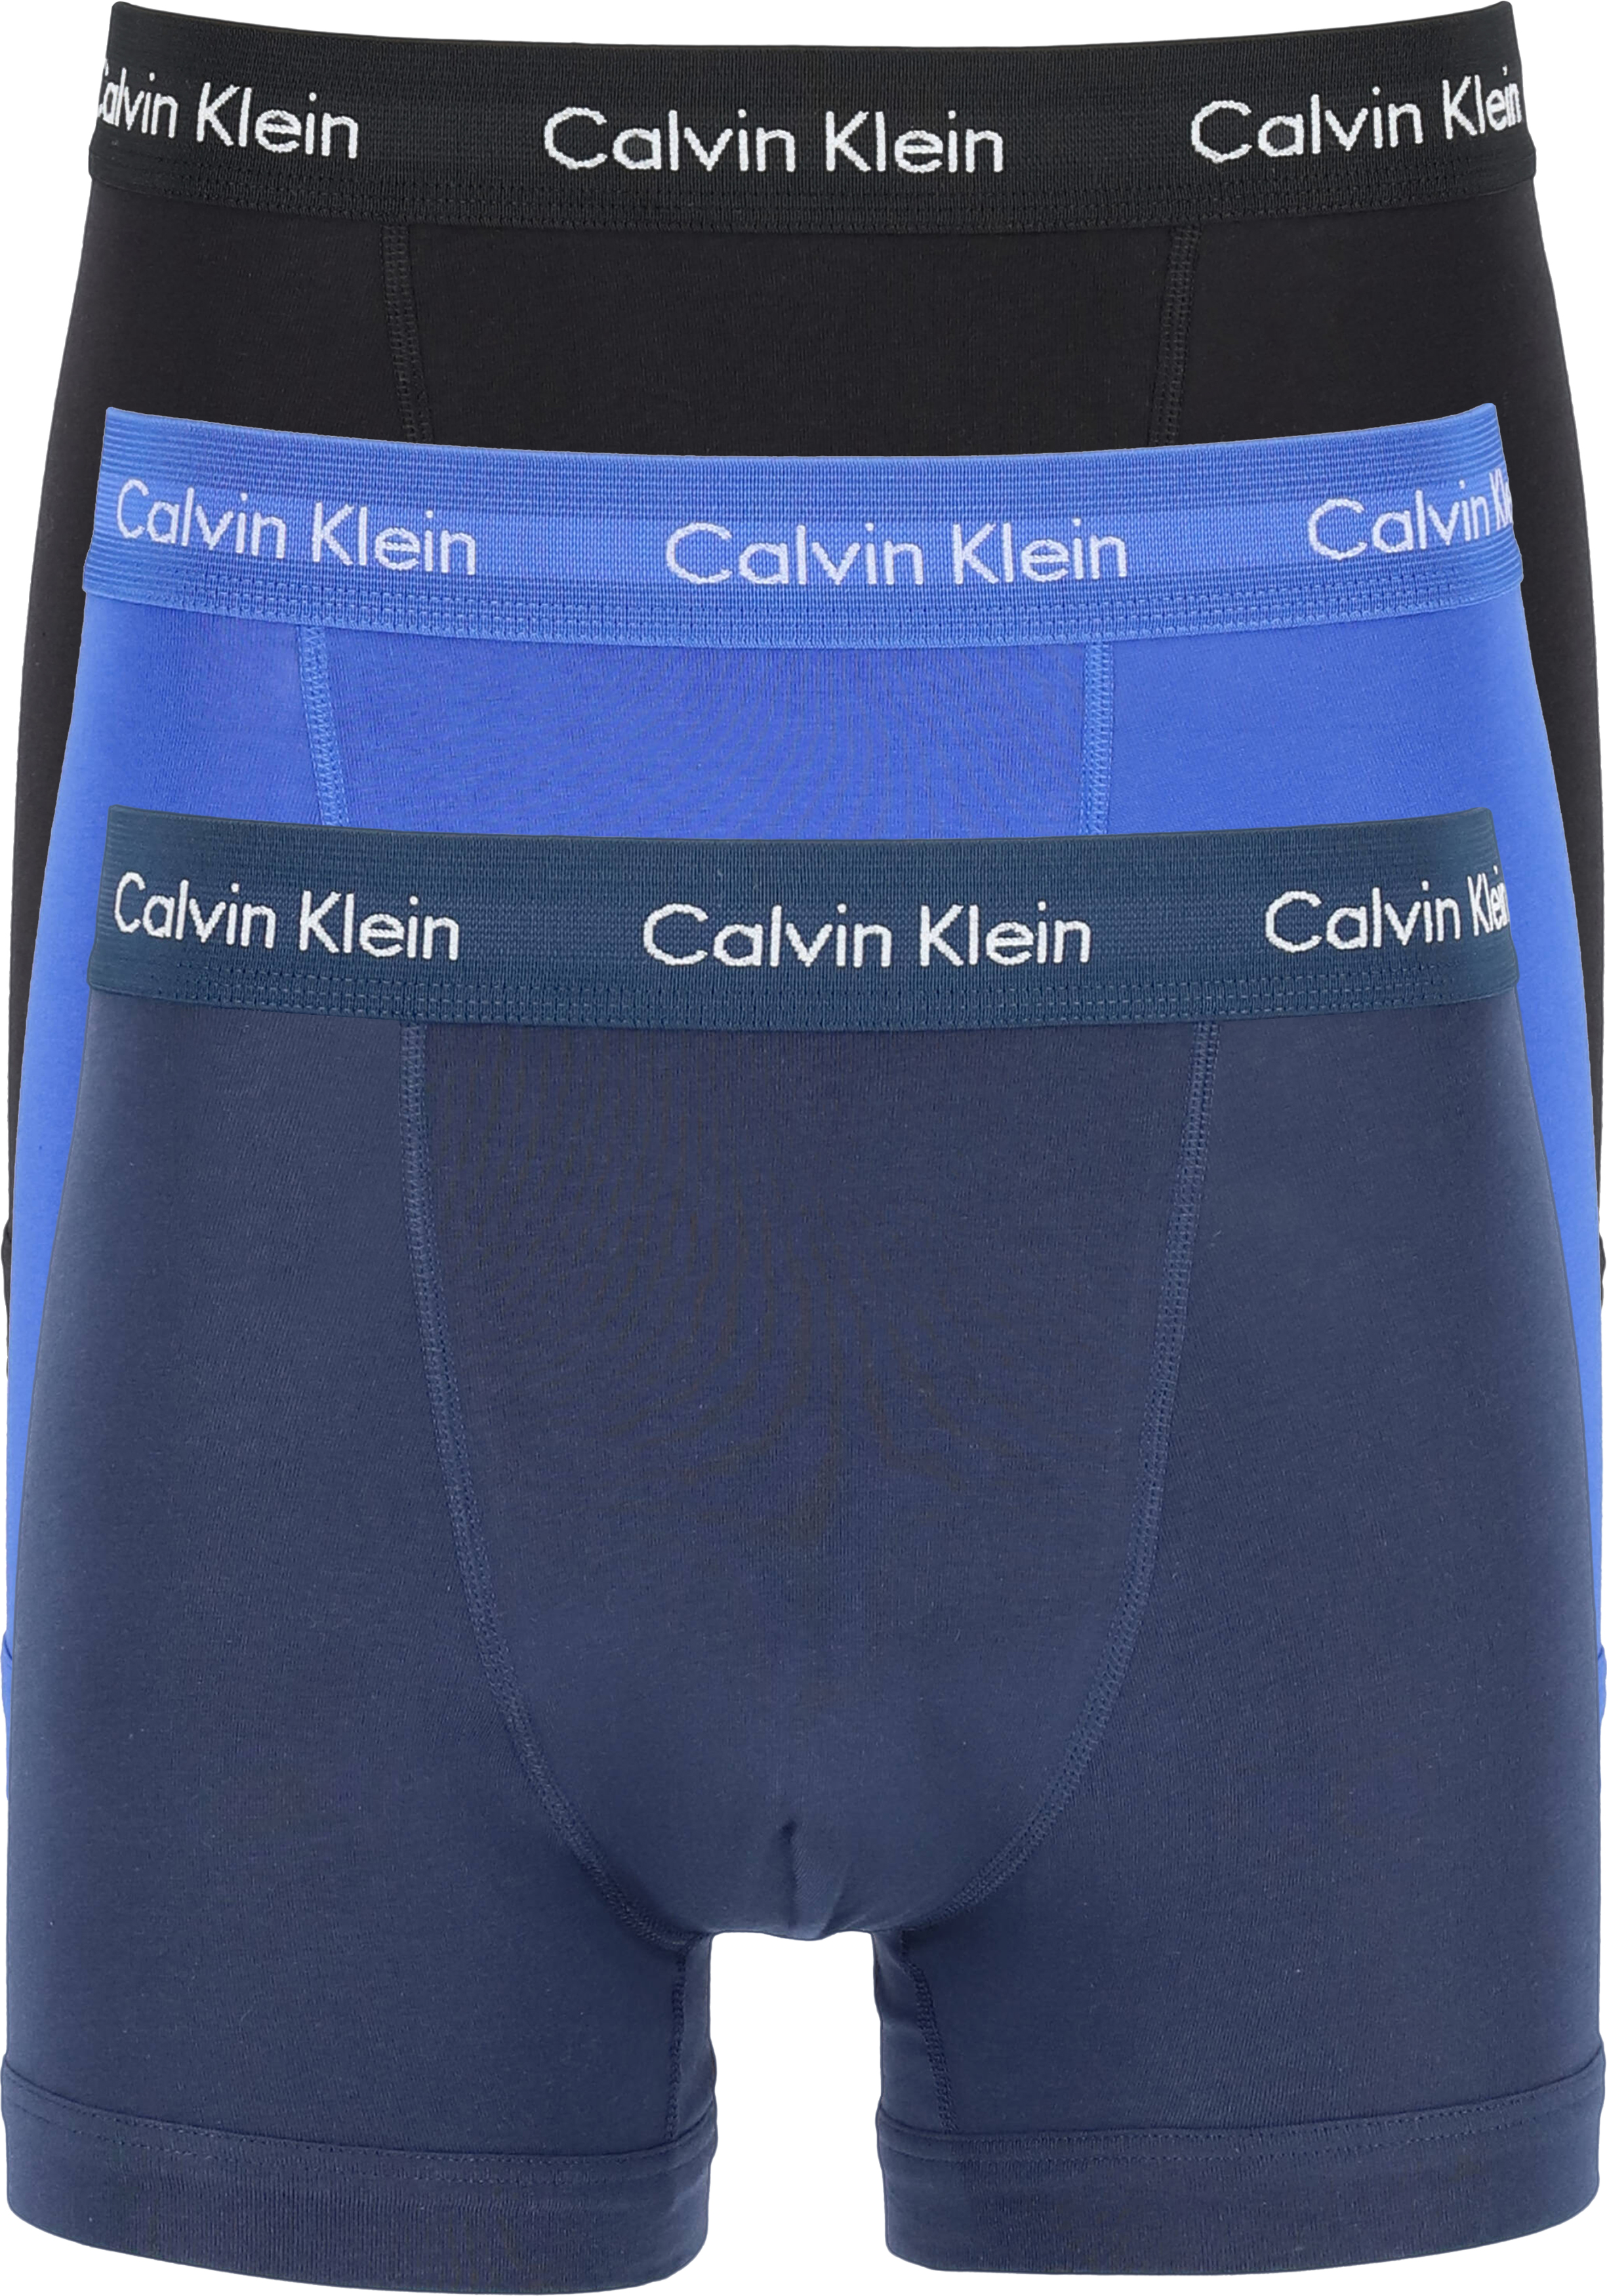 Calvin trunks (3-pack), heren boxers normale lengte, kobalt, navy... - Zomer tot 70% korting